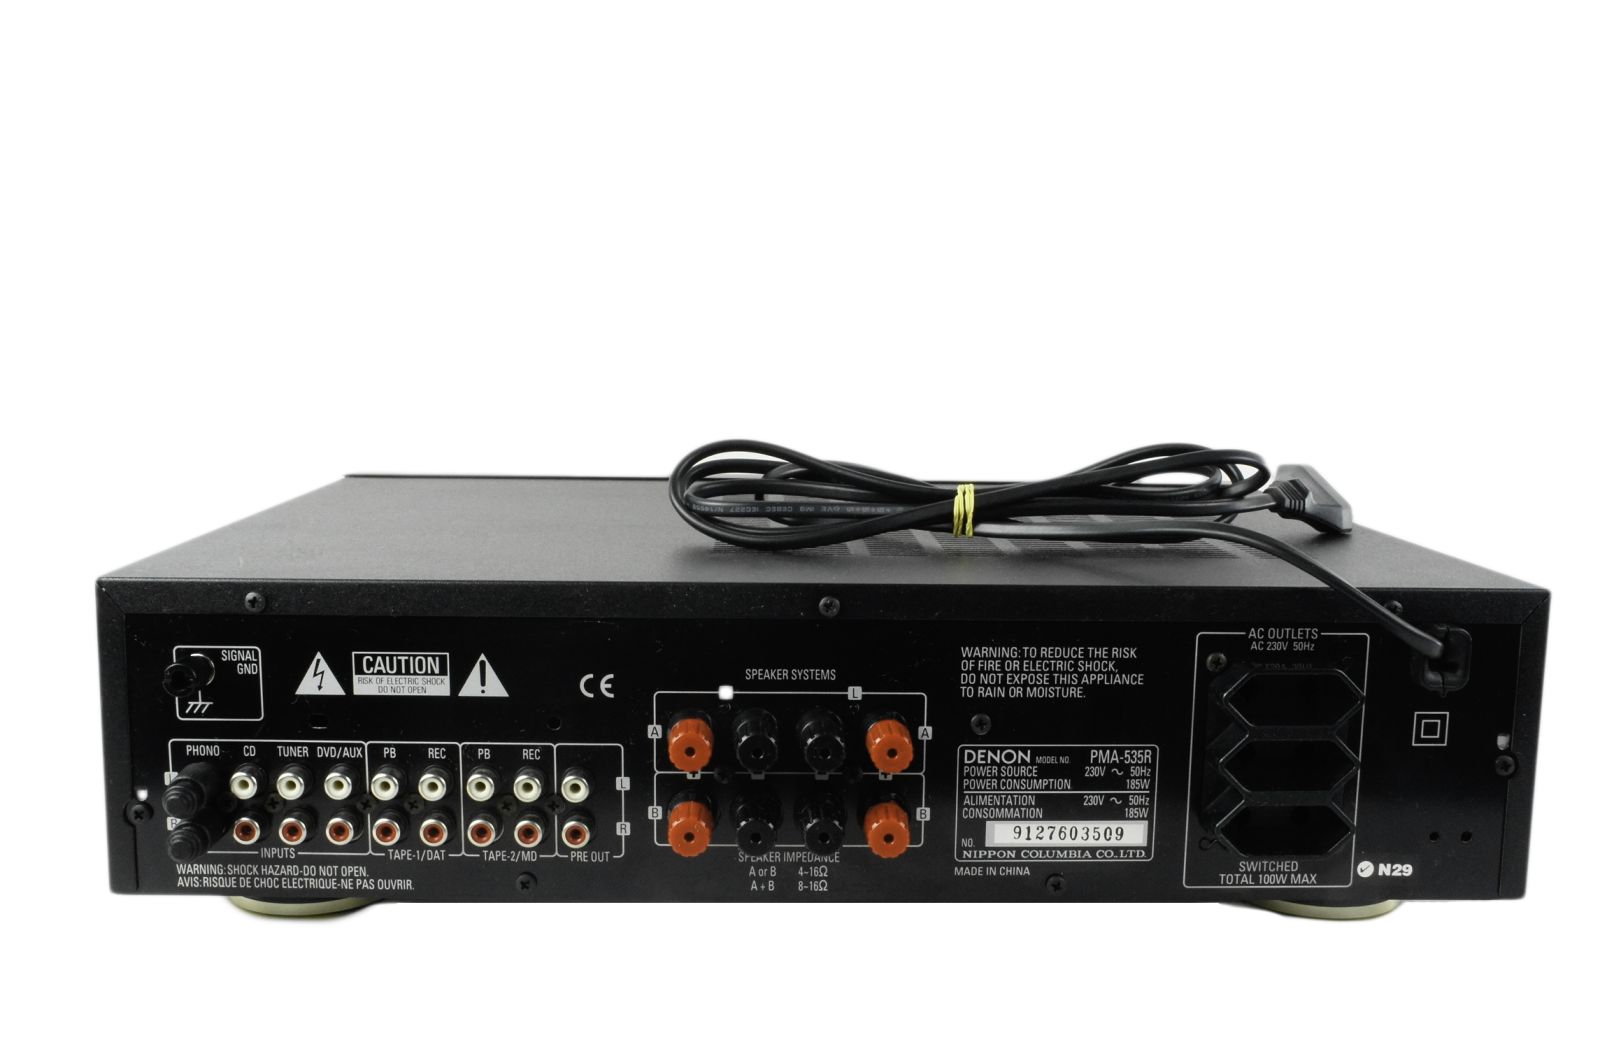 Denon_PMA-535R_Integrated_Amplifier_06